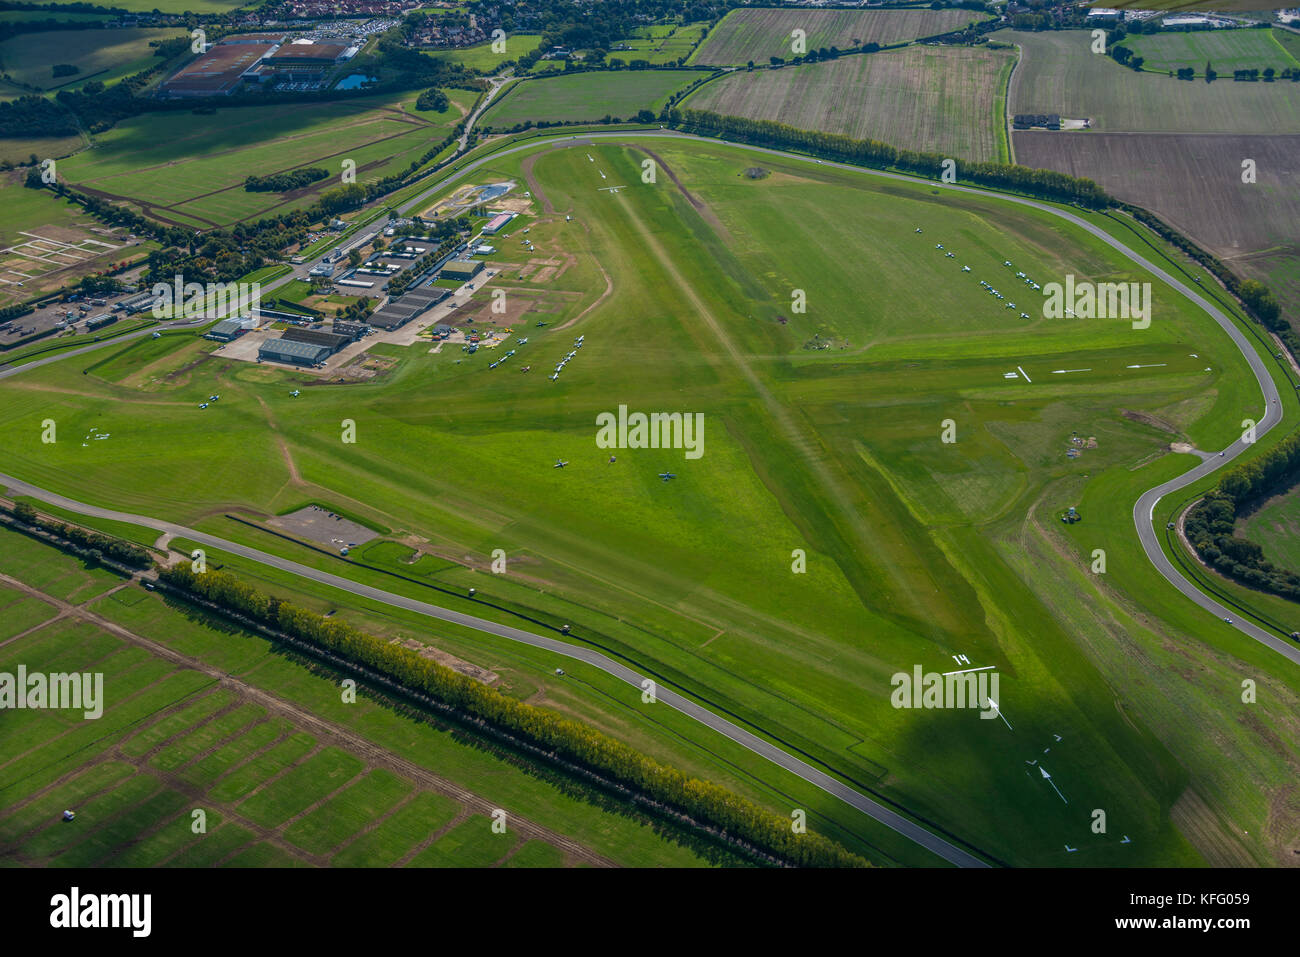 Eine Luftaufnahme des Flugplatzes Goodwood und der Rennstrecke im Süden Englands. Stockfoto